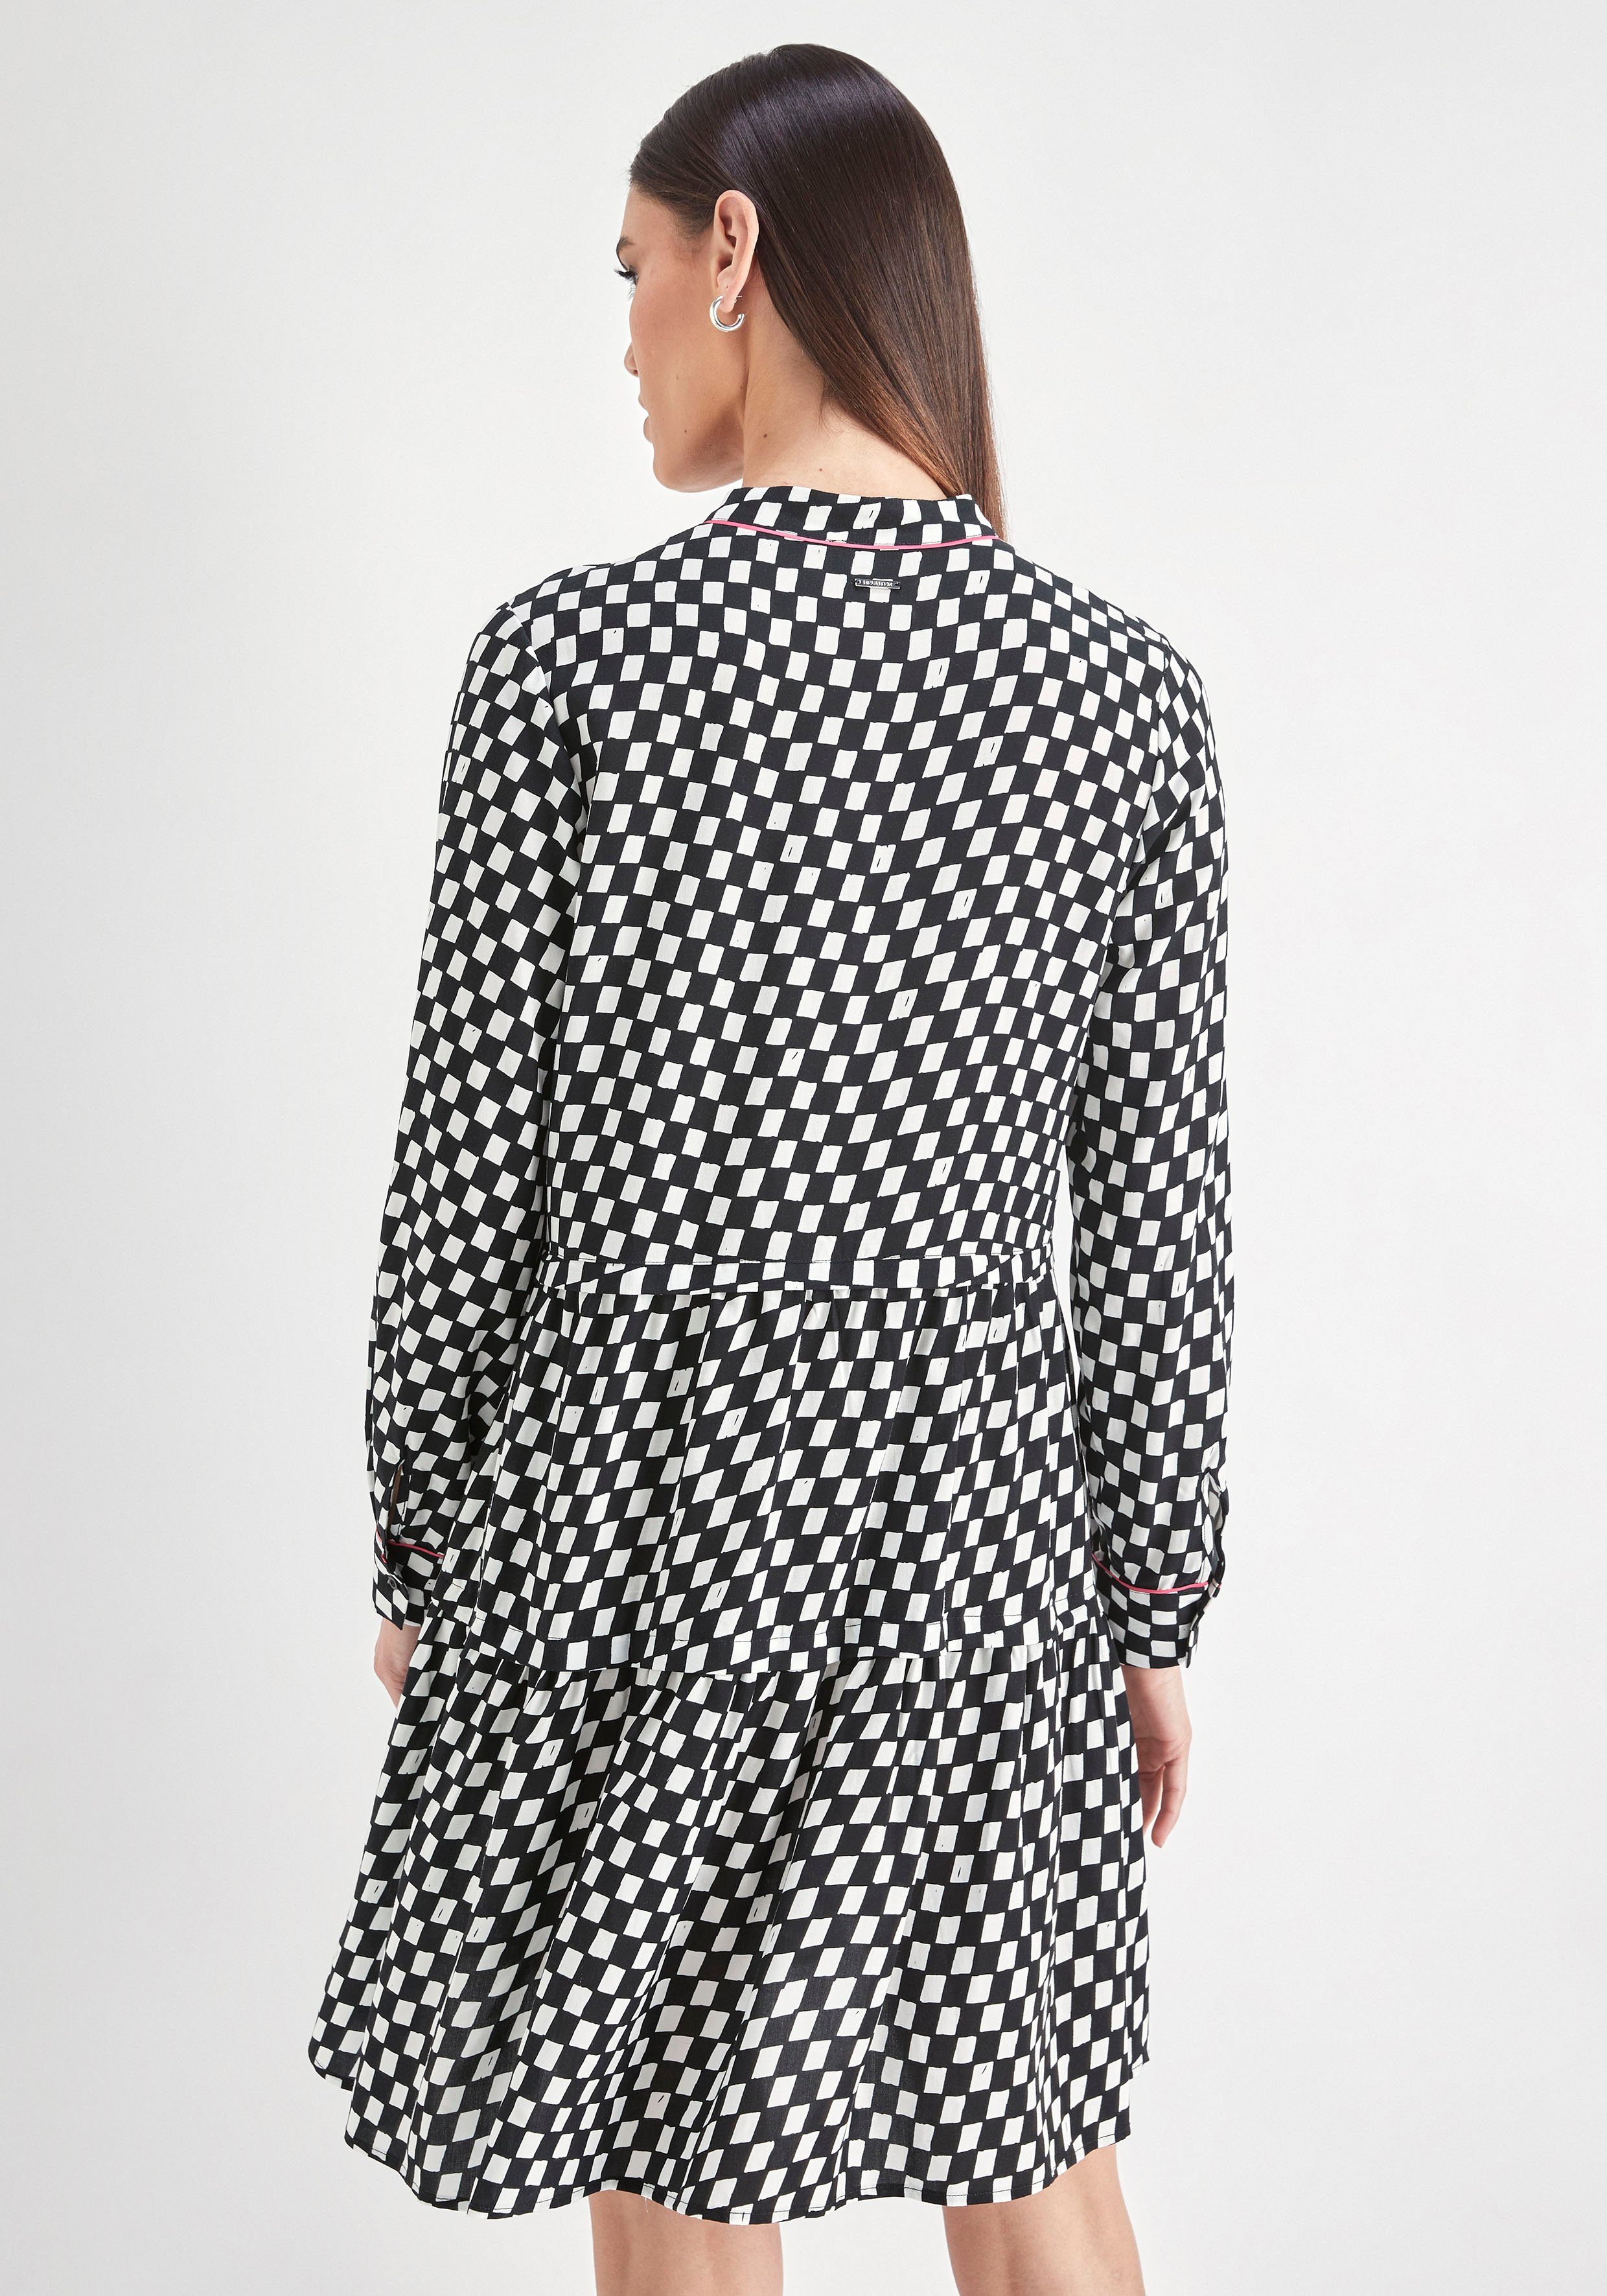 HECHTER PARIS Blusenkleid mit Print schwarz weiß